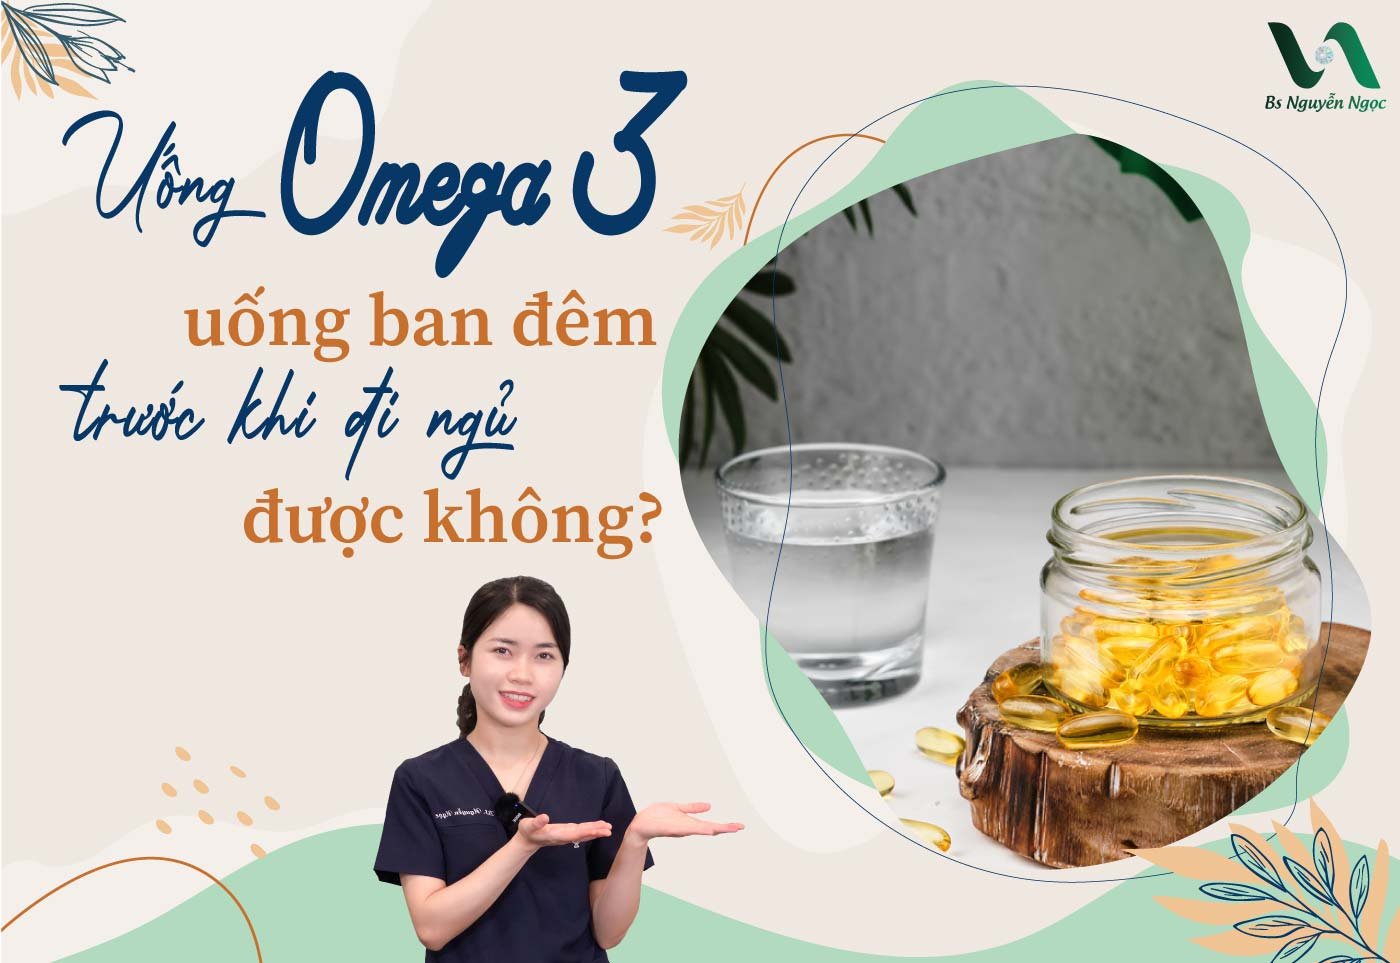 Uống Omega 3 uống ban đêm, trước khi đi ngủ được không?